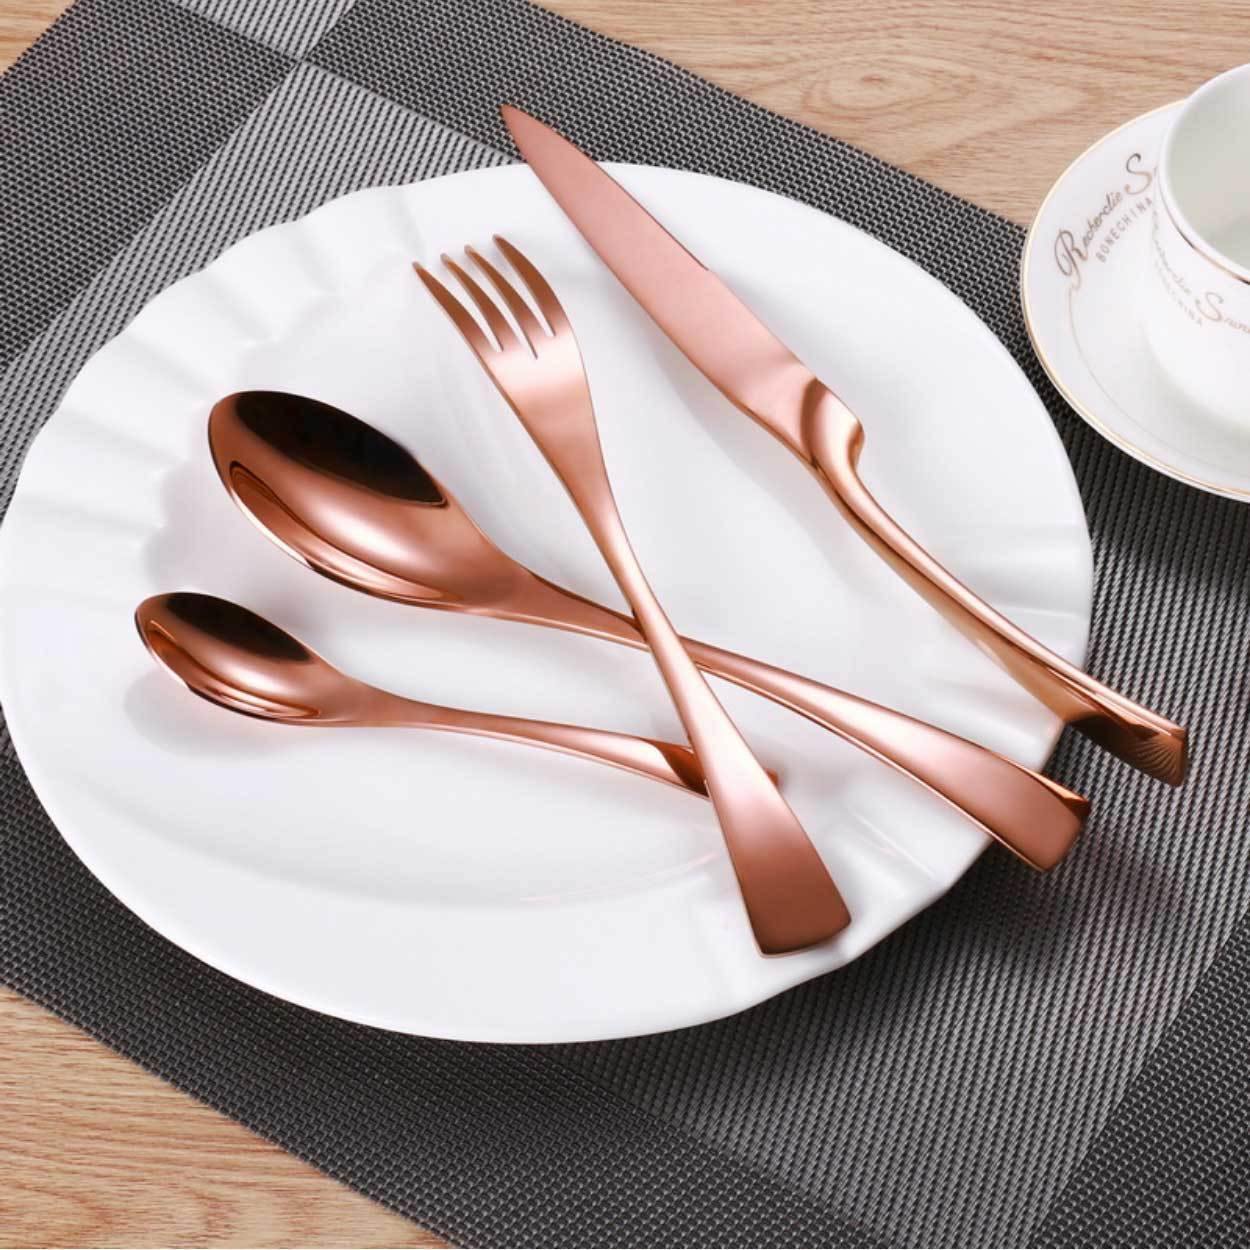 Rose Gold Slim Metal Cutlery Set - Nordic Side - 